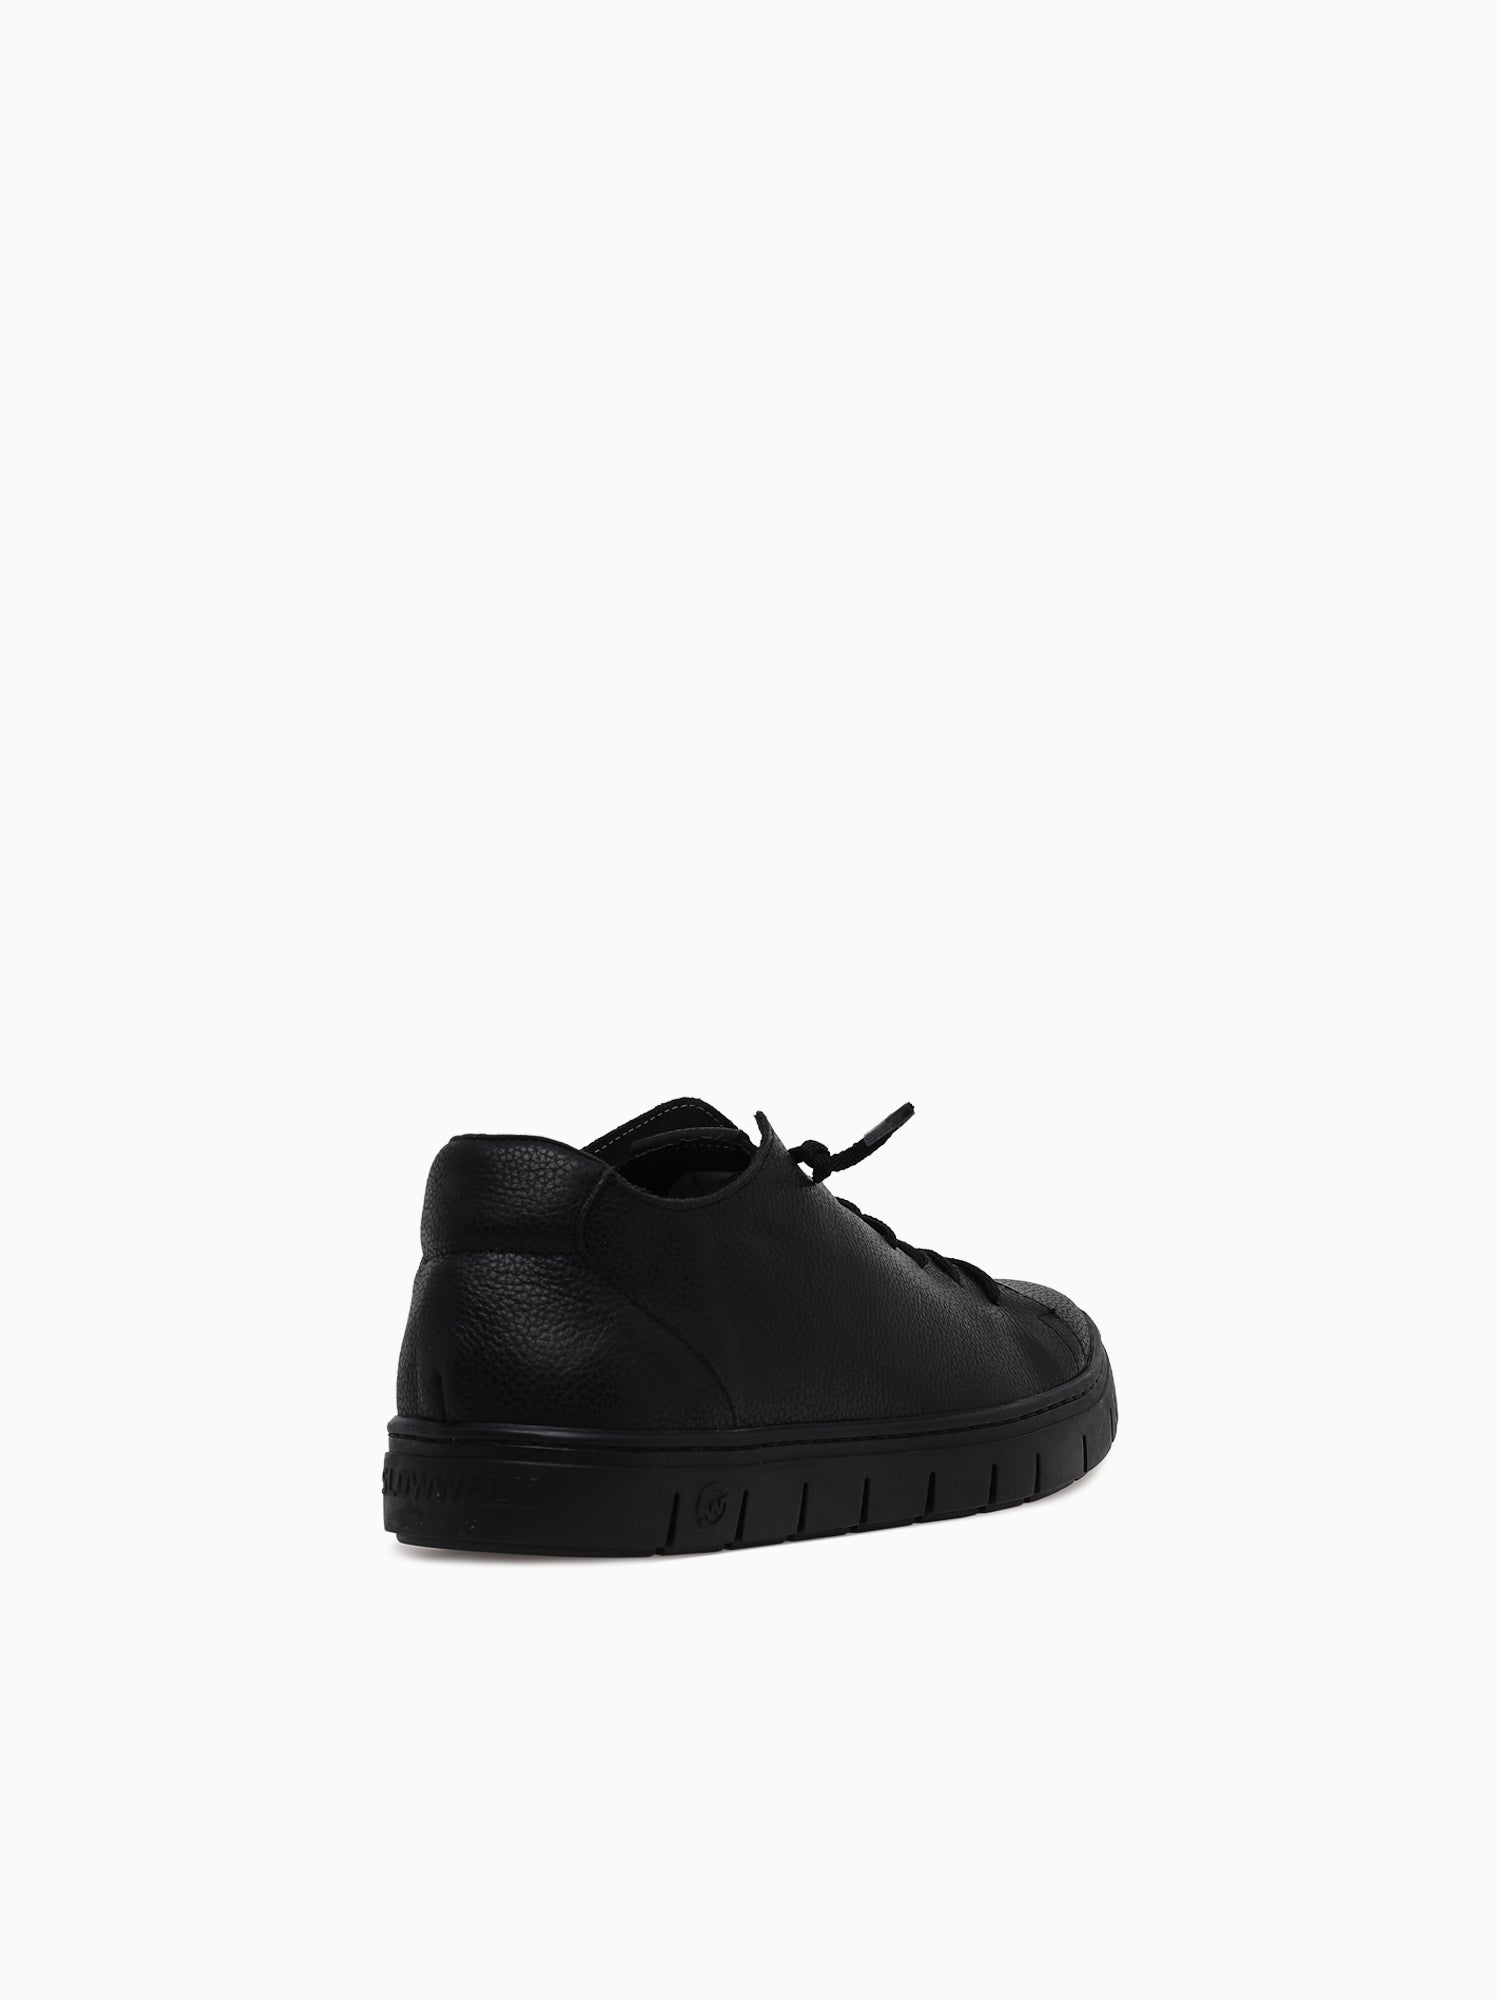 Kraz Black Black– Novus Shoes